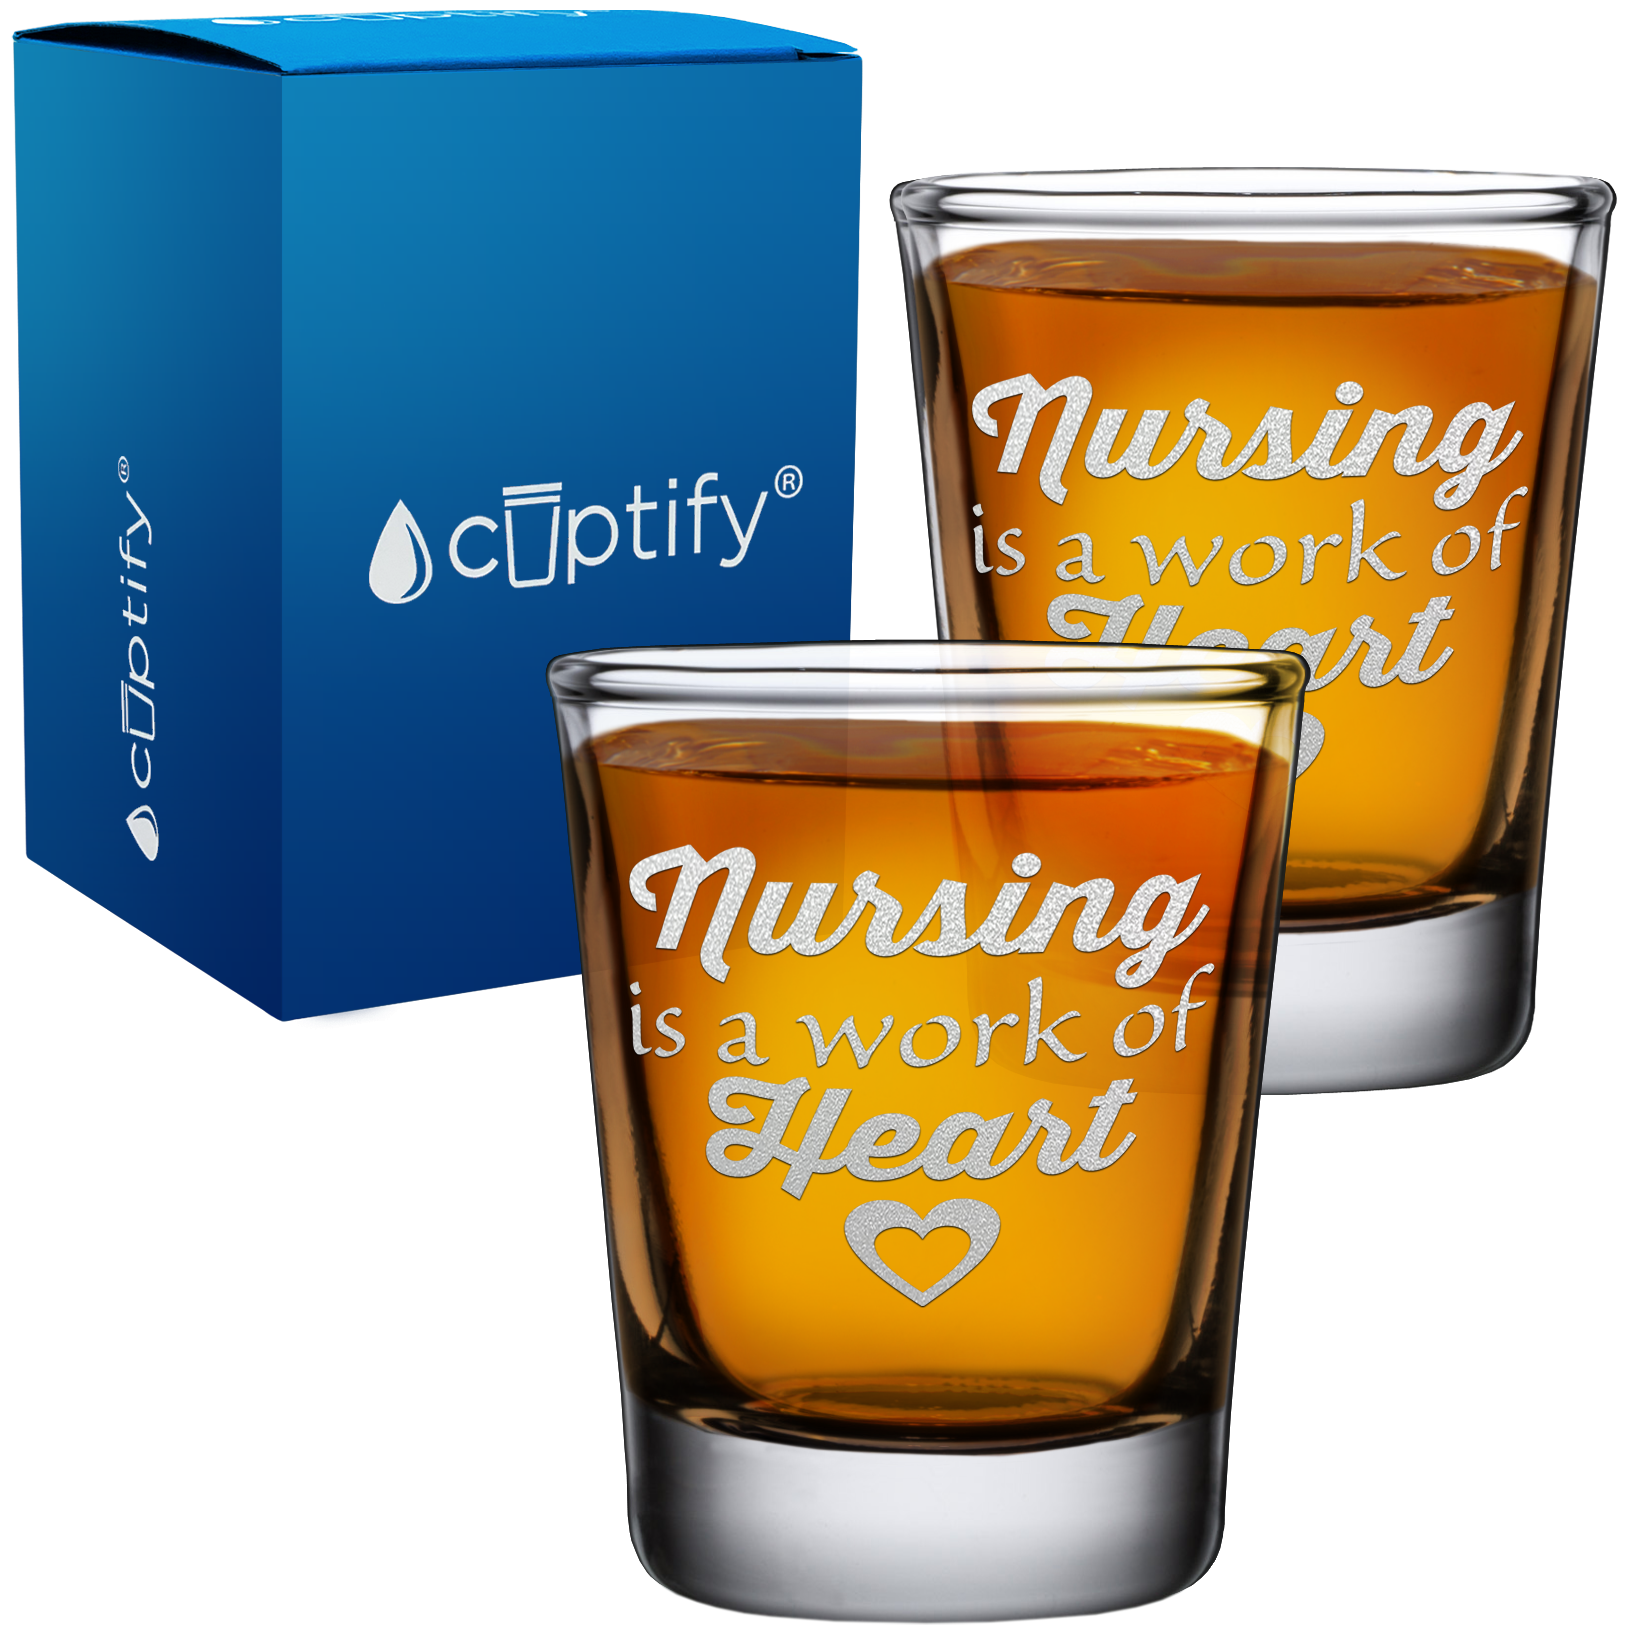 Nursing is a work of Heart on 2oz Shot Glasses - Set of 2